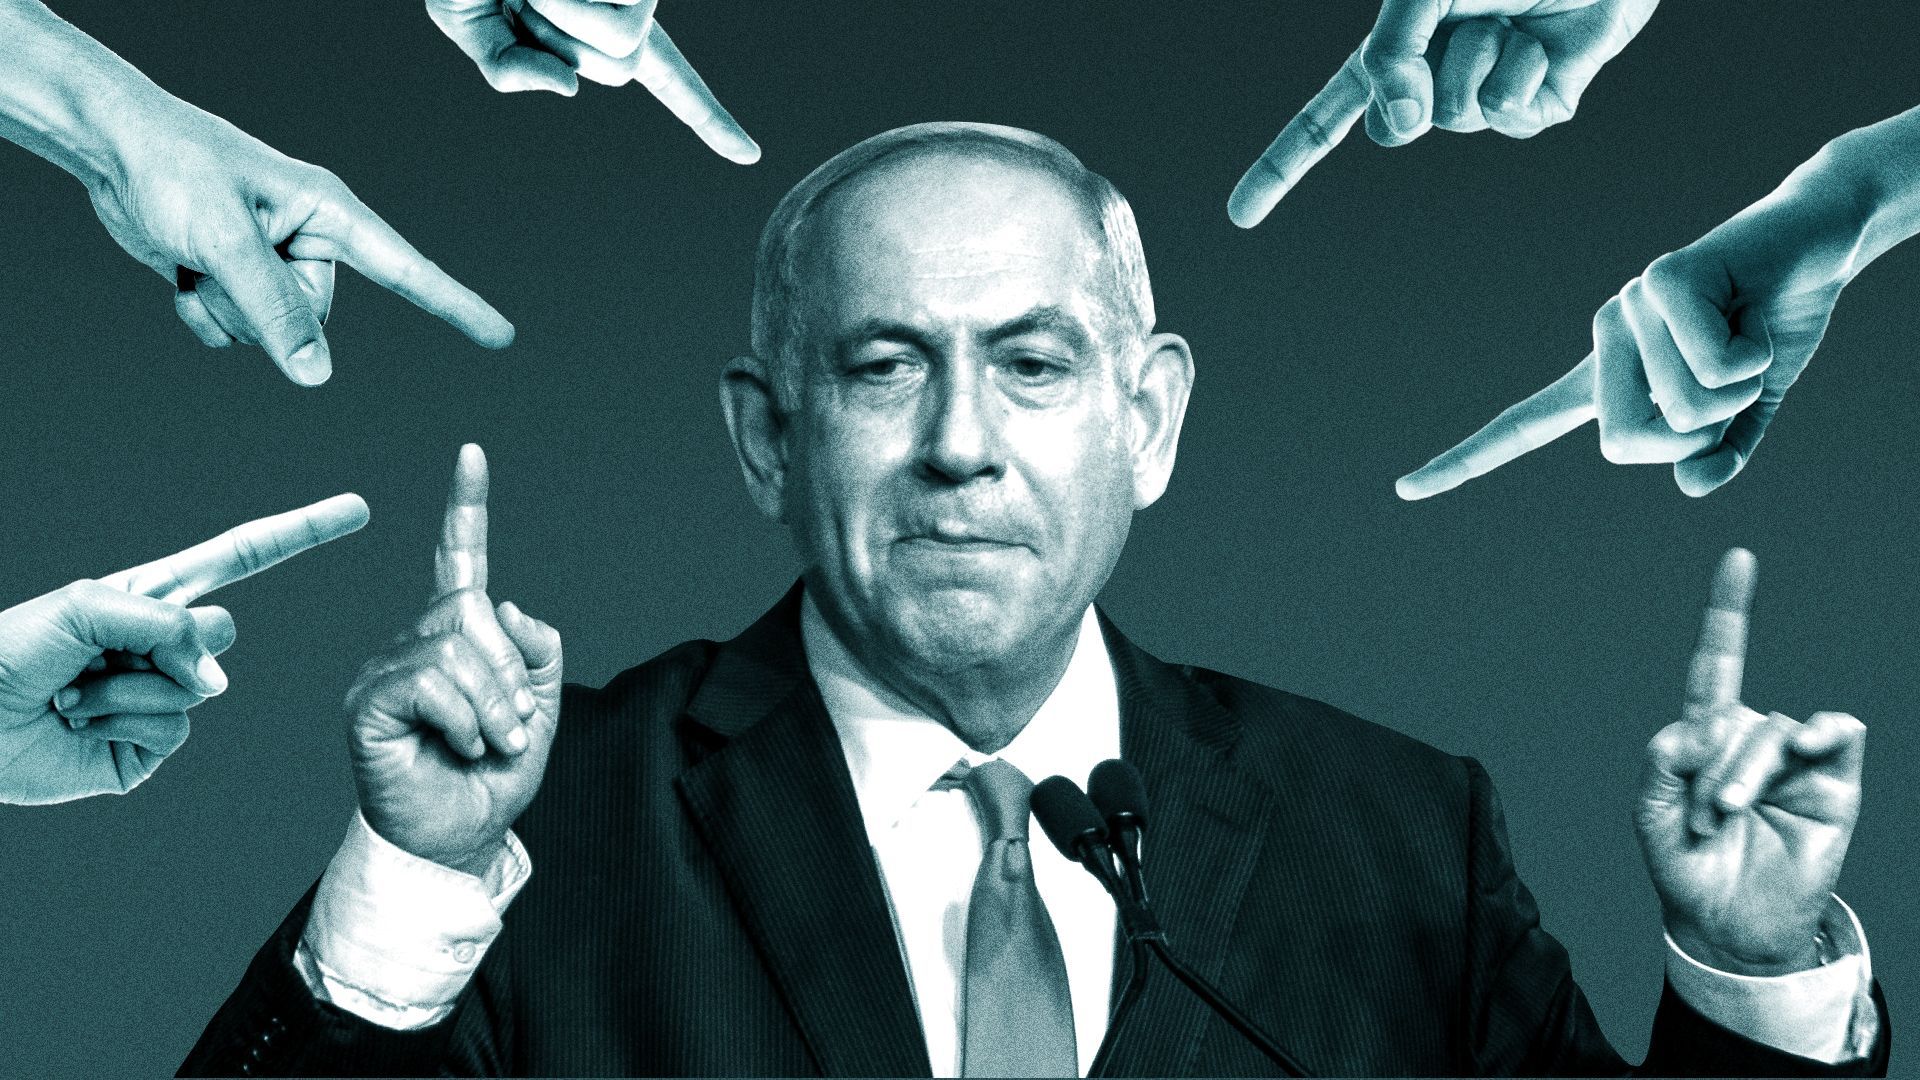 Israele, il "cerca alibi" al potere e c'è da tremare